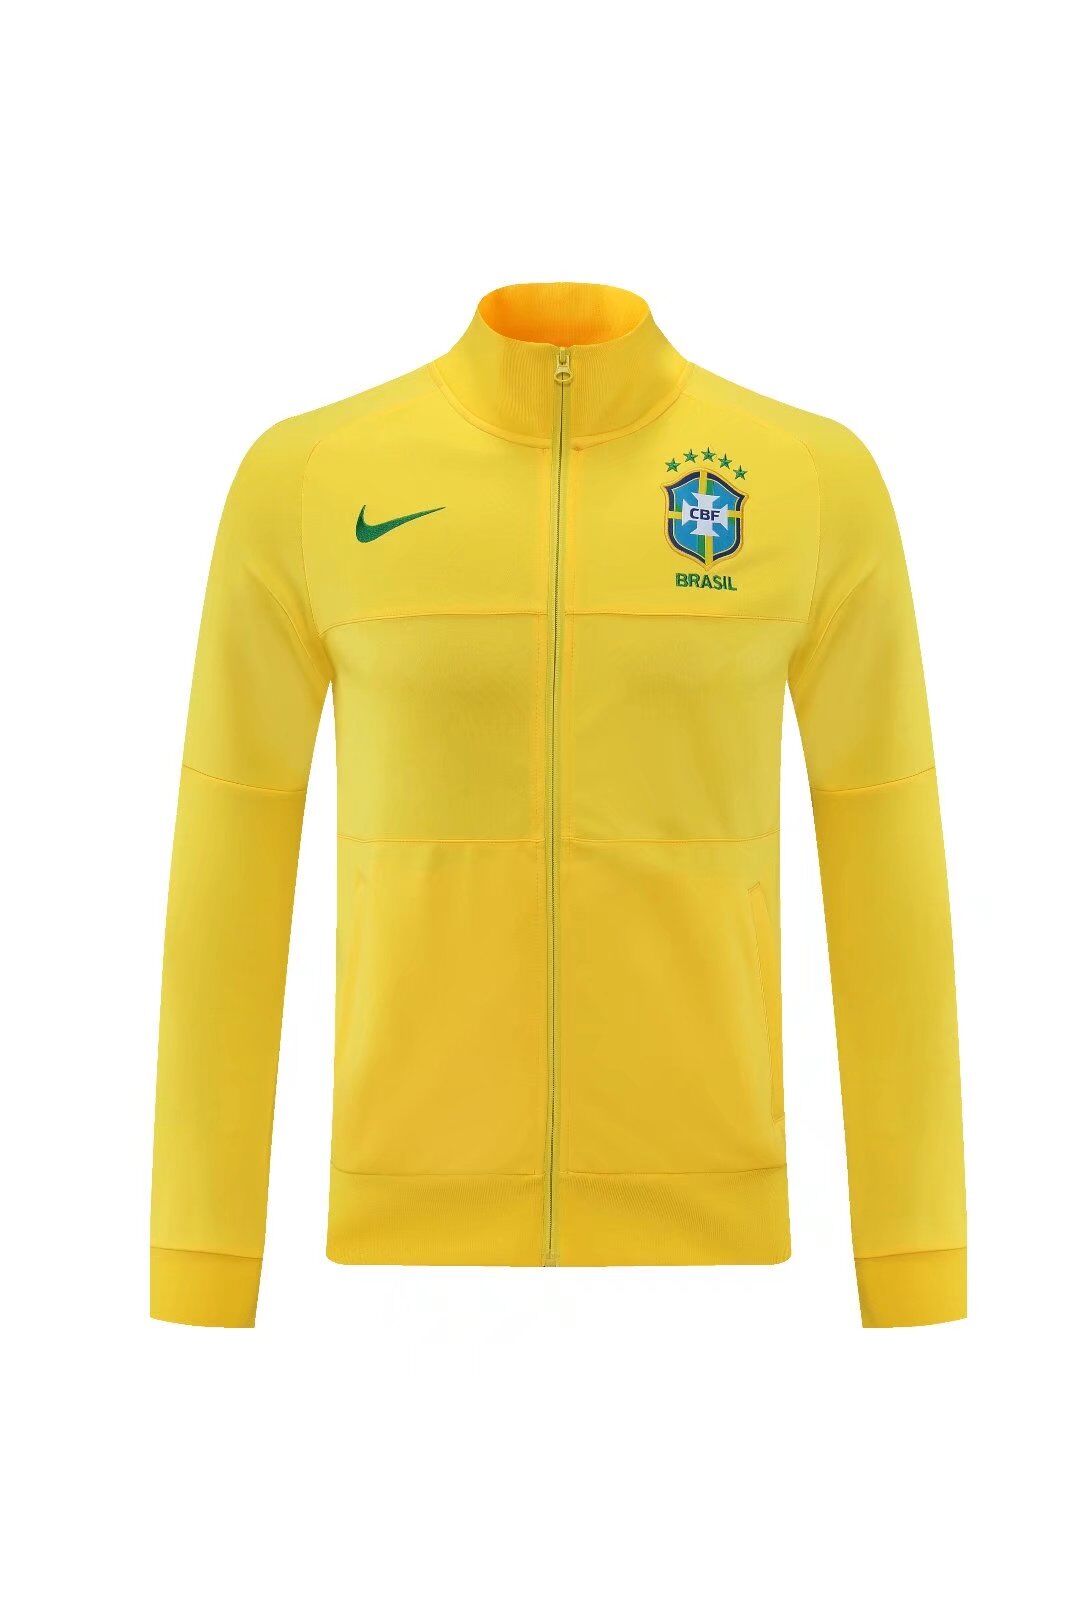 Brazil Training Jacket Yellow 2021/22